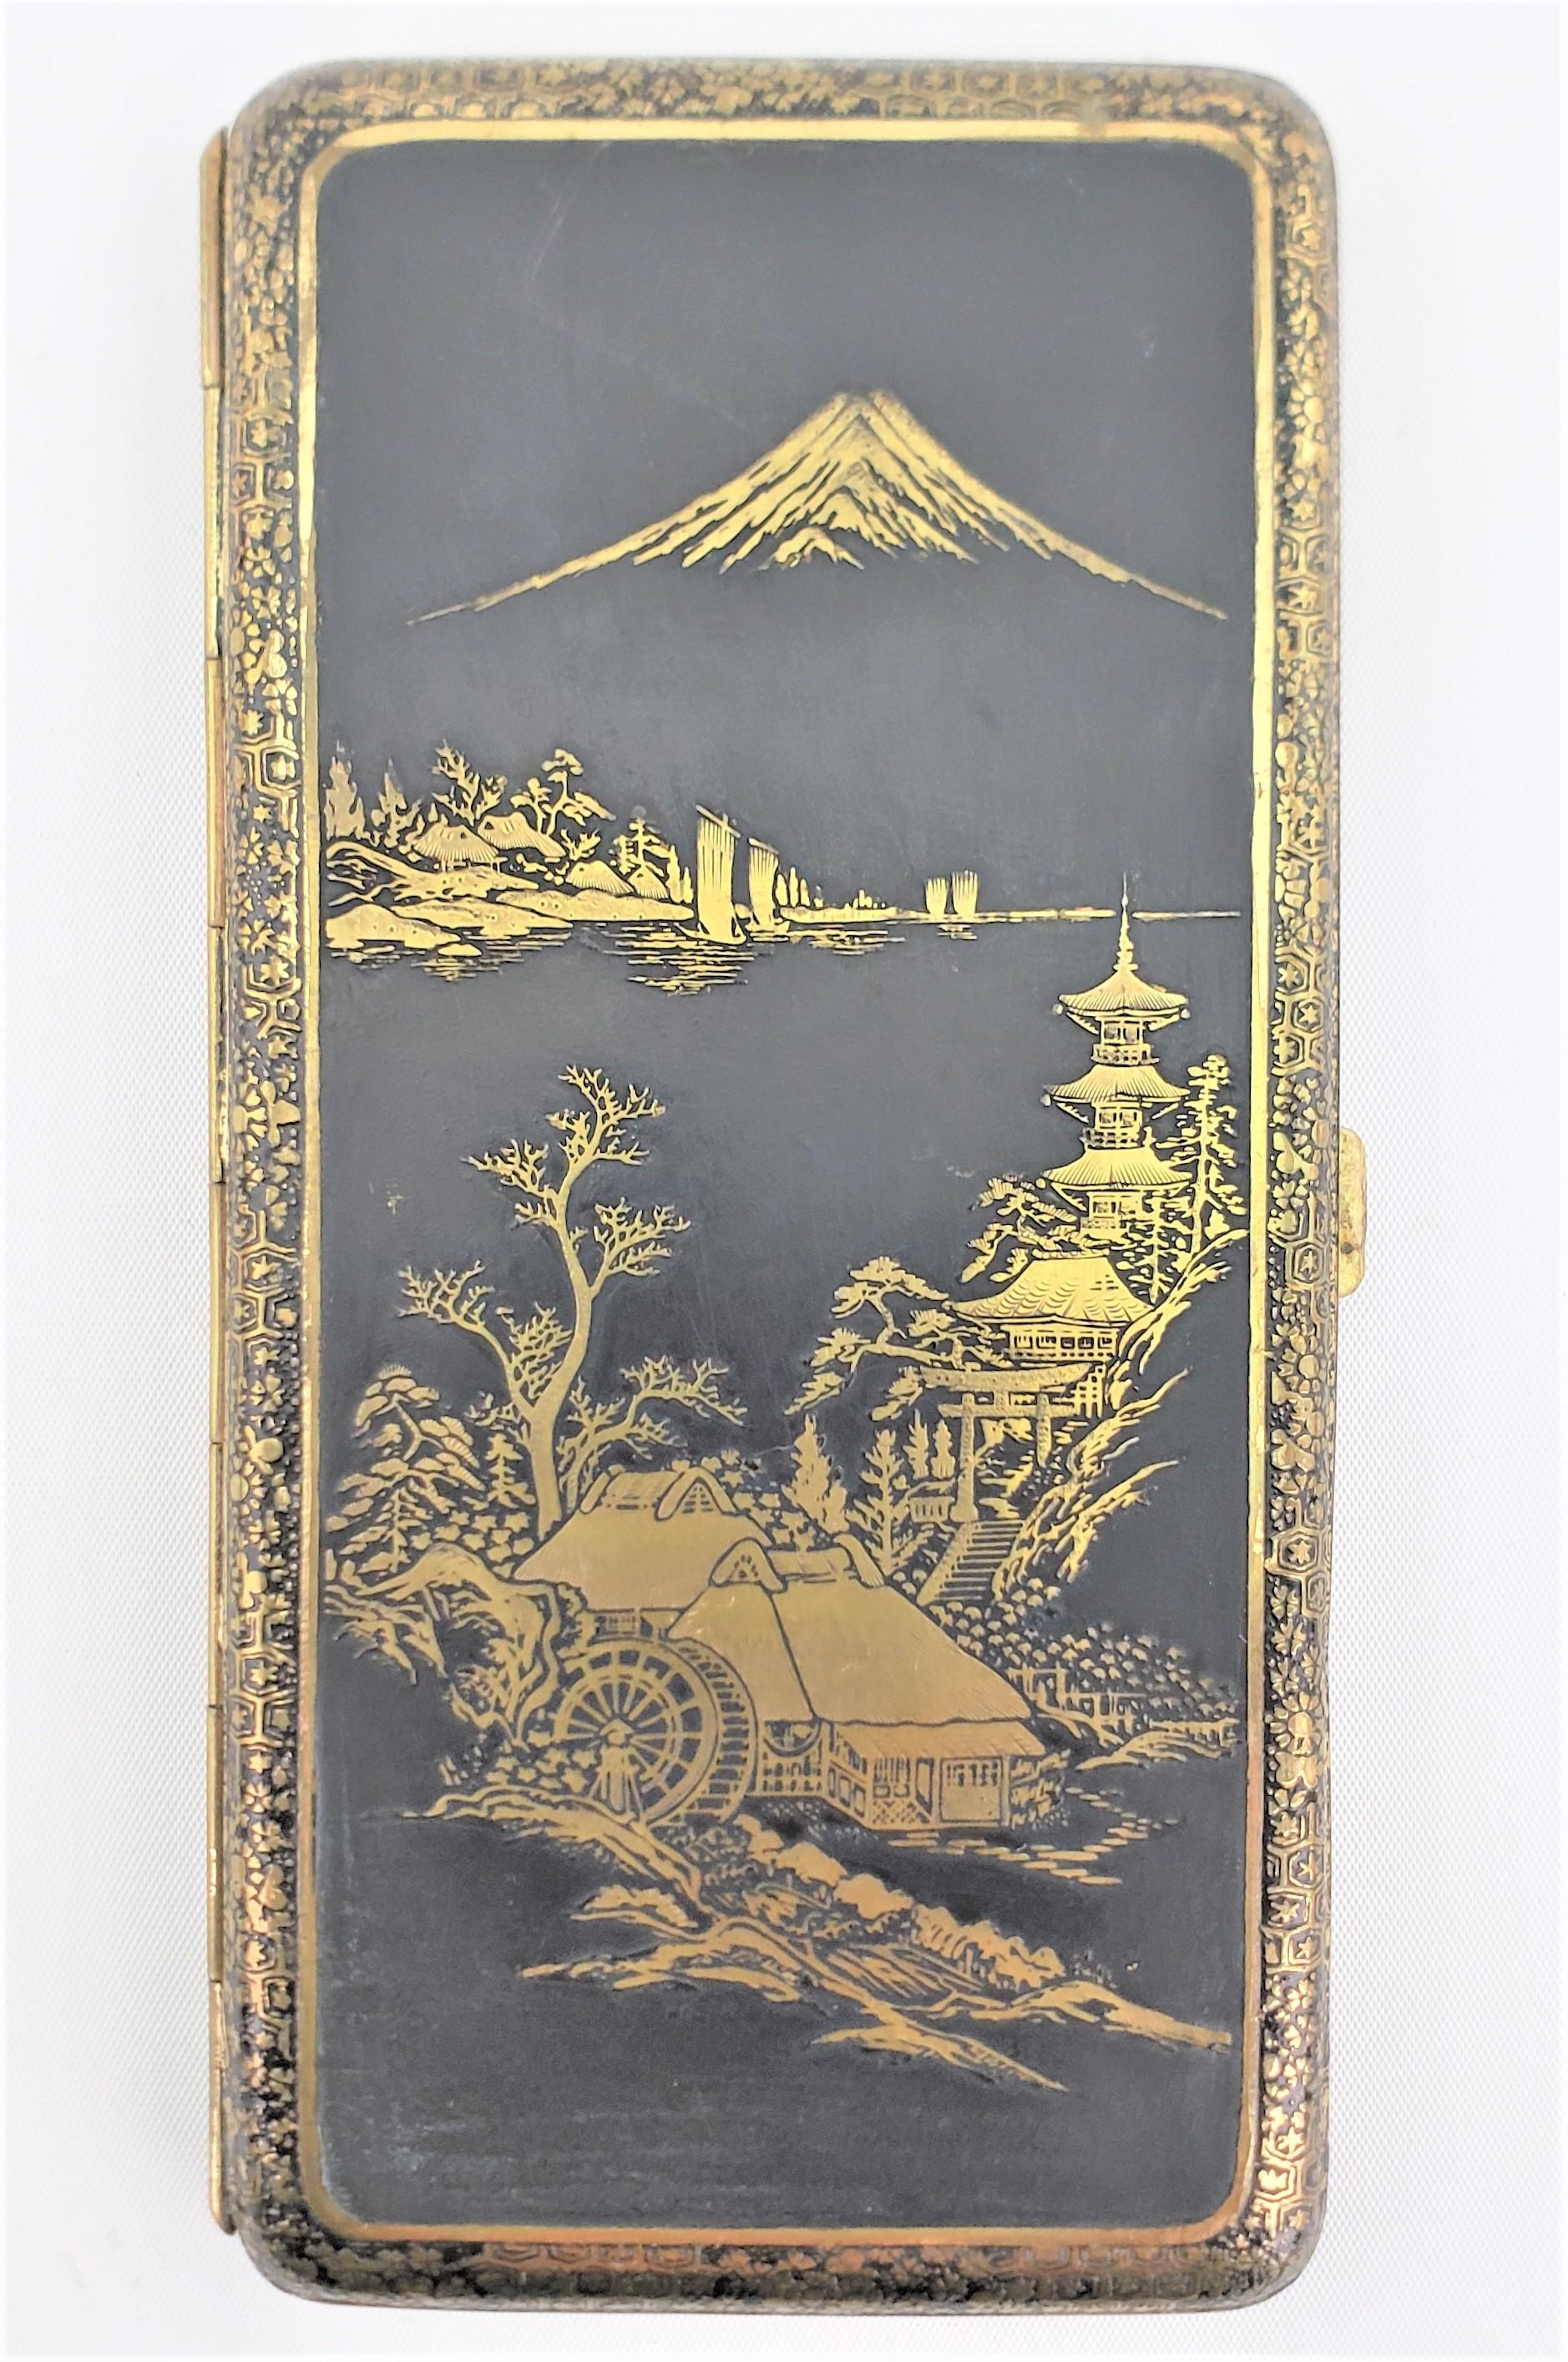 Ce grand étui à tabac antique de style damasquiné n'est pas signé, mais on présume qu'il provient du Japon et qu'il date d'environ 1920. Il est réalisé dans un style anglo-japonais. Le boîtier est en métal, orné d'une scène de paysage japonais sur